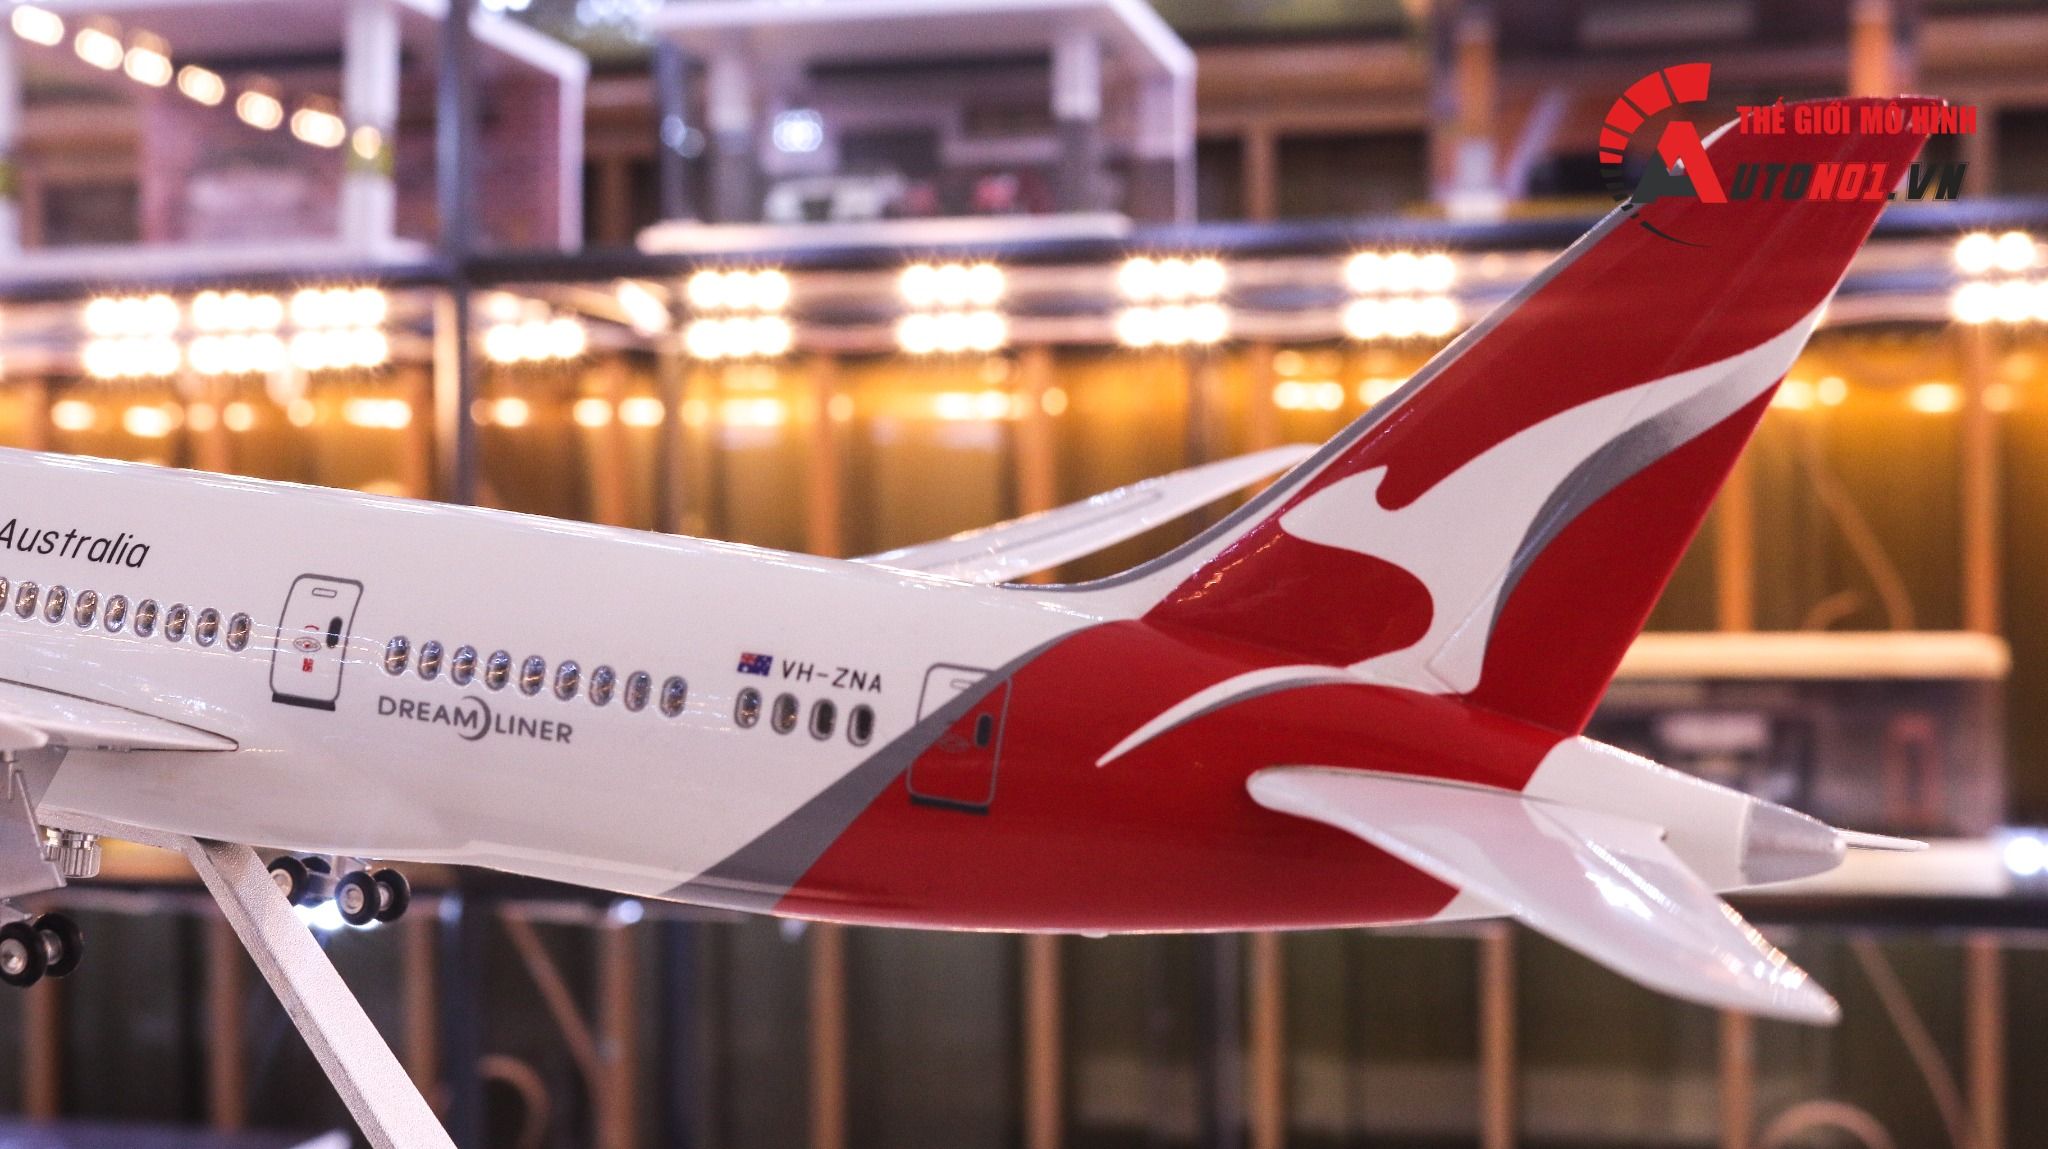  Mô hình máy bay Australia Qantas Boeing B787 47cm 1:130 có đèn led tự động theo tiếng vỗ tay hoặc chạm MB47007 